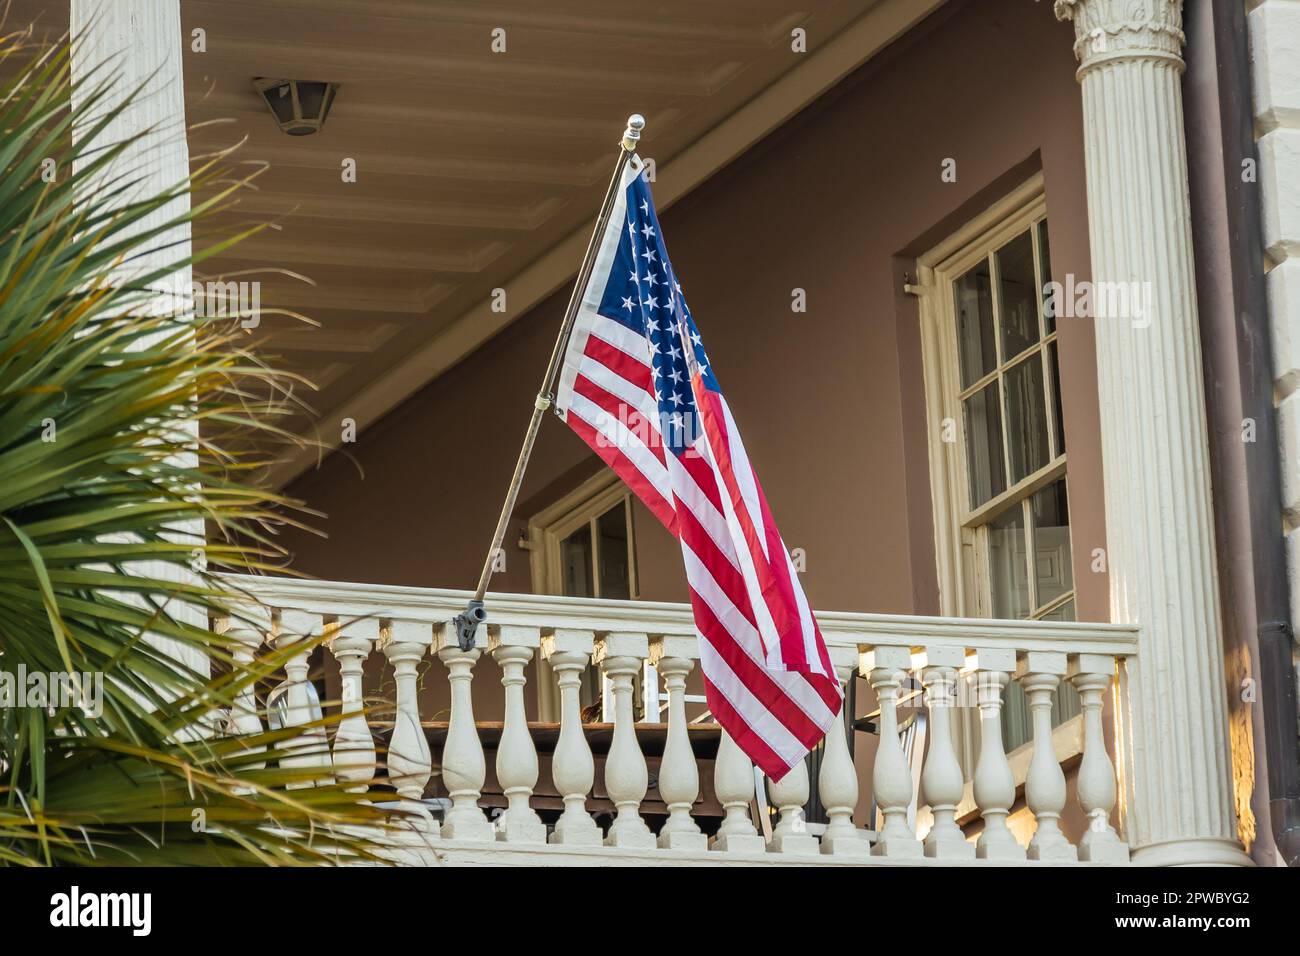 Una bandiera americana appesa al di fuori di una casa di epoca coloniale alla luce del mattino. Foto Stock